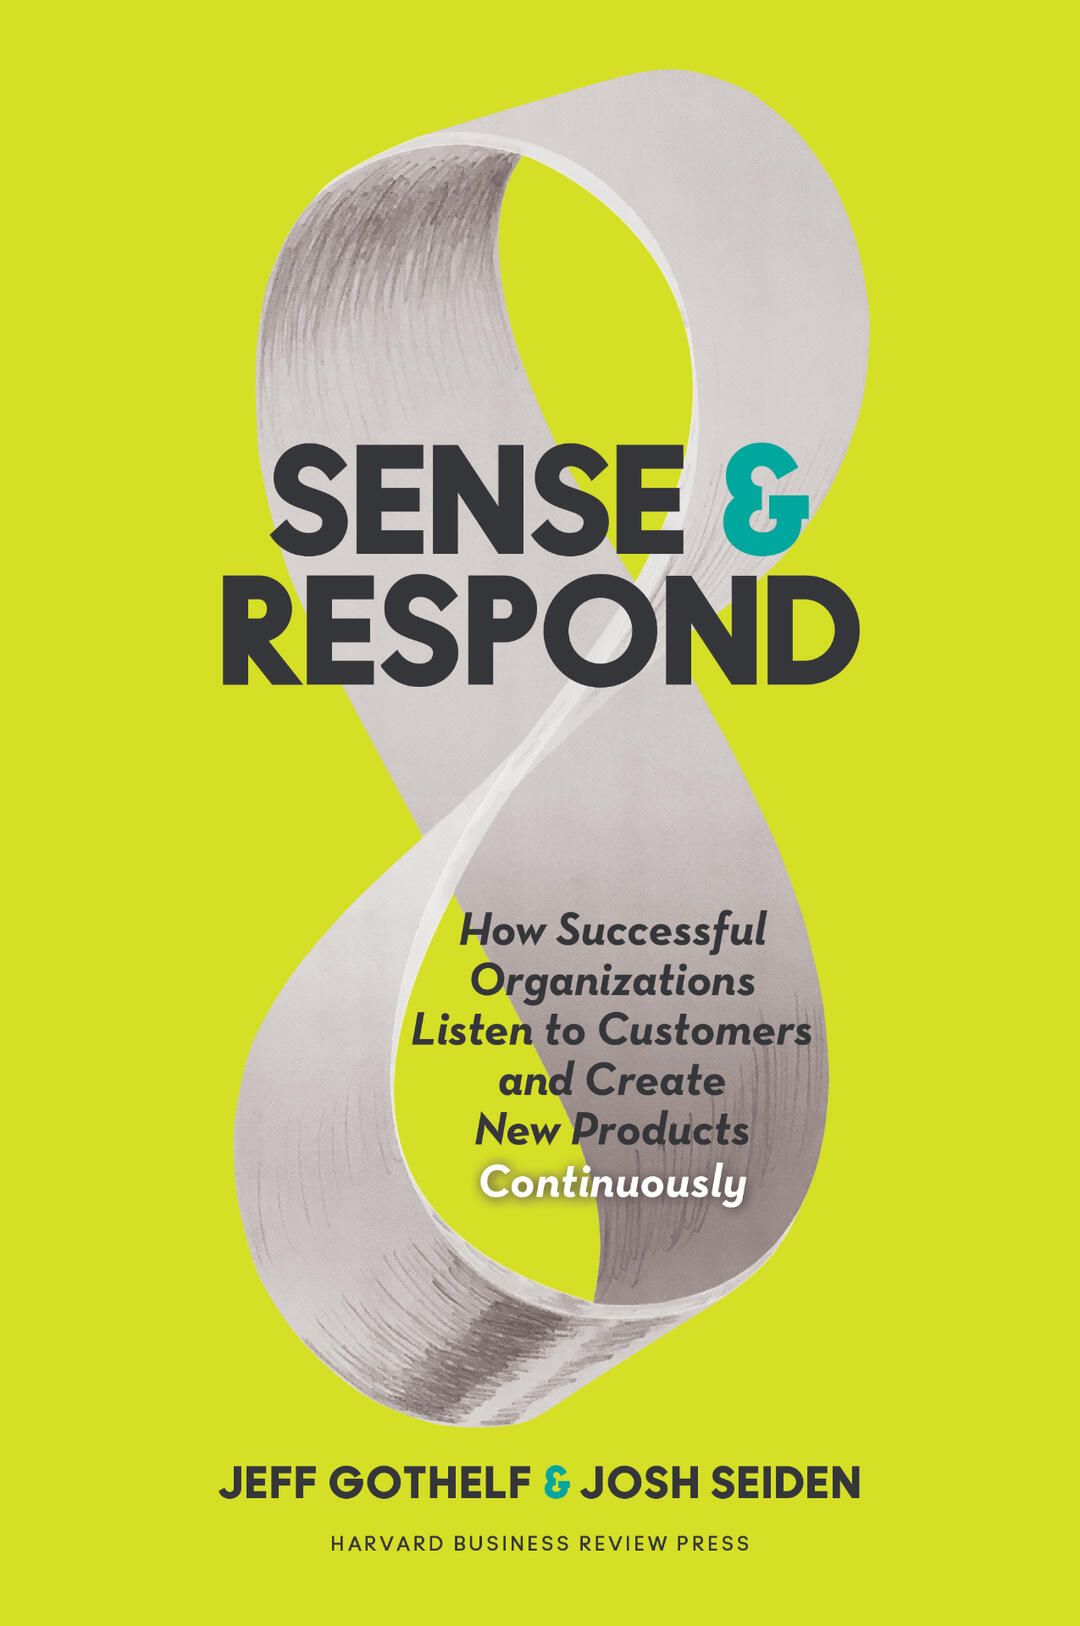 Sense & Respond Book Cover Image